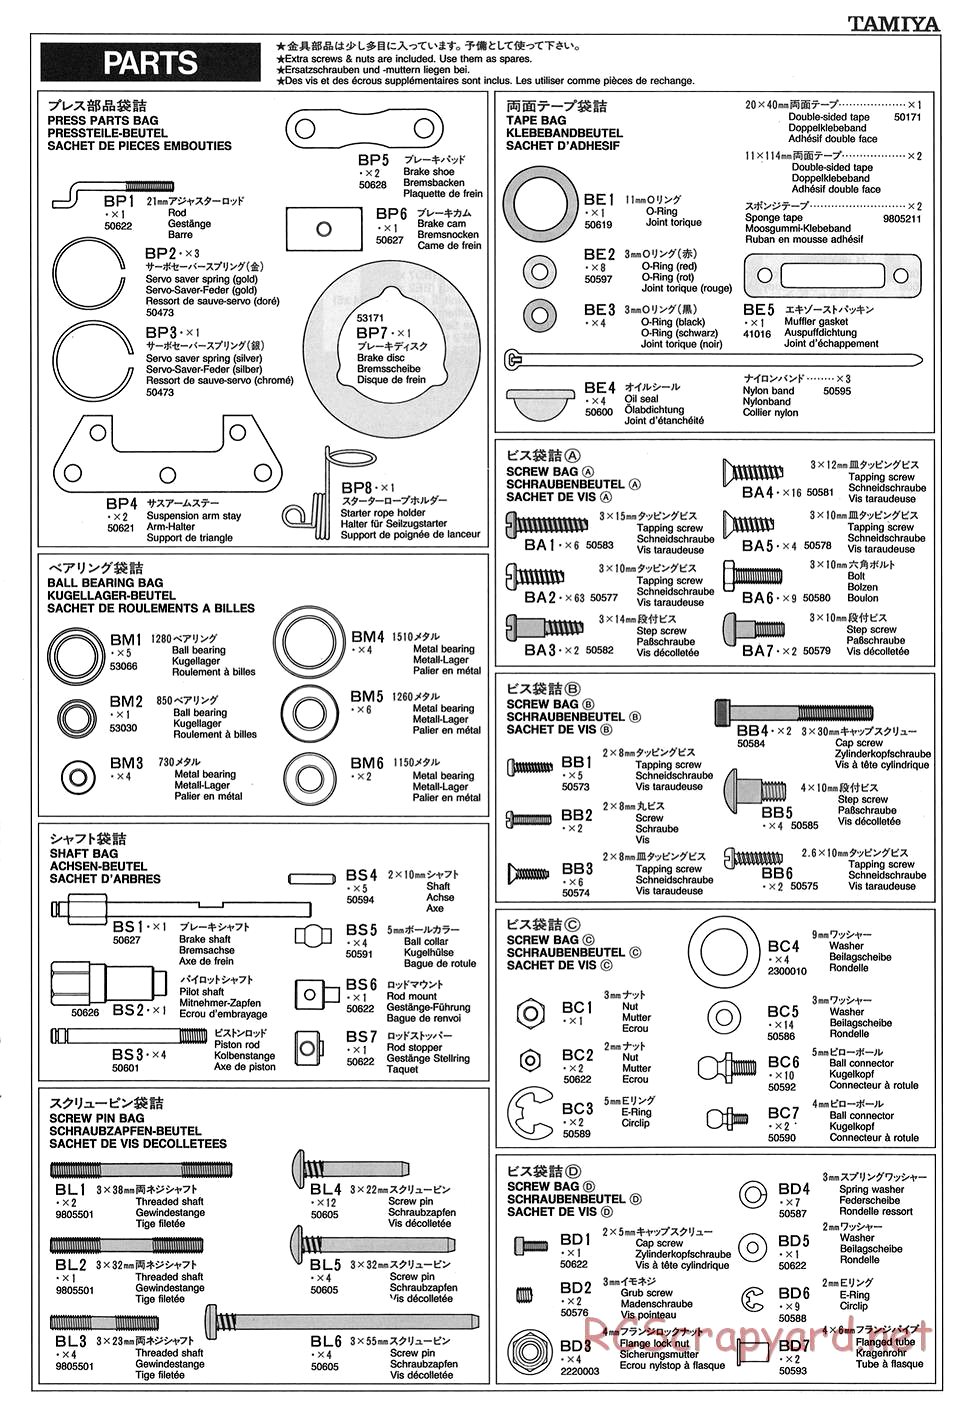 Tamiya - TGX Mk.1 Chassis - Manual - Page 28